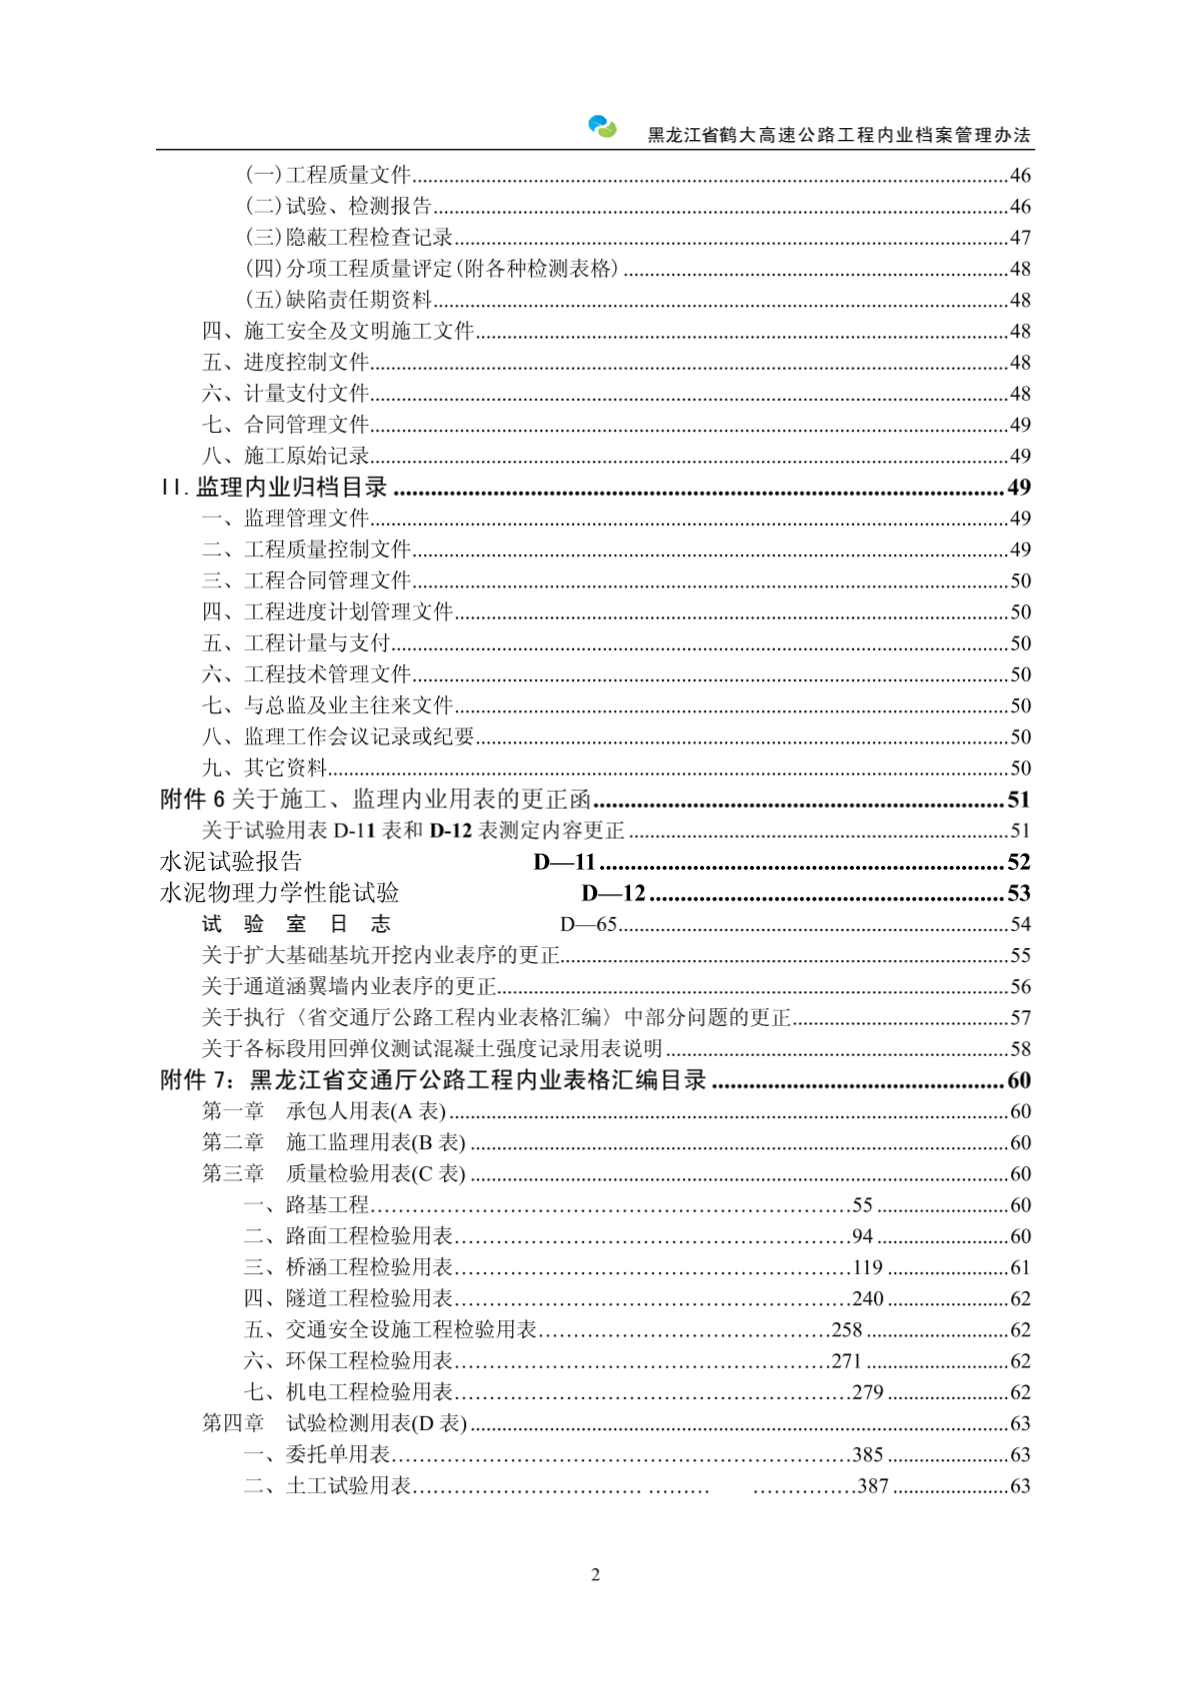 鹤大指挥部工程内业档案管理办法(试行)09.10-图二